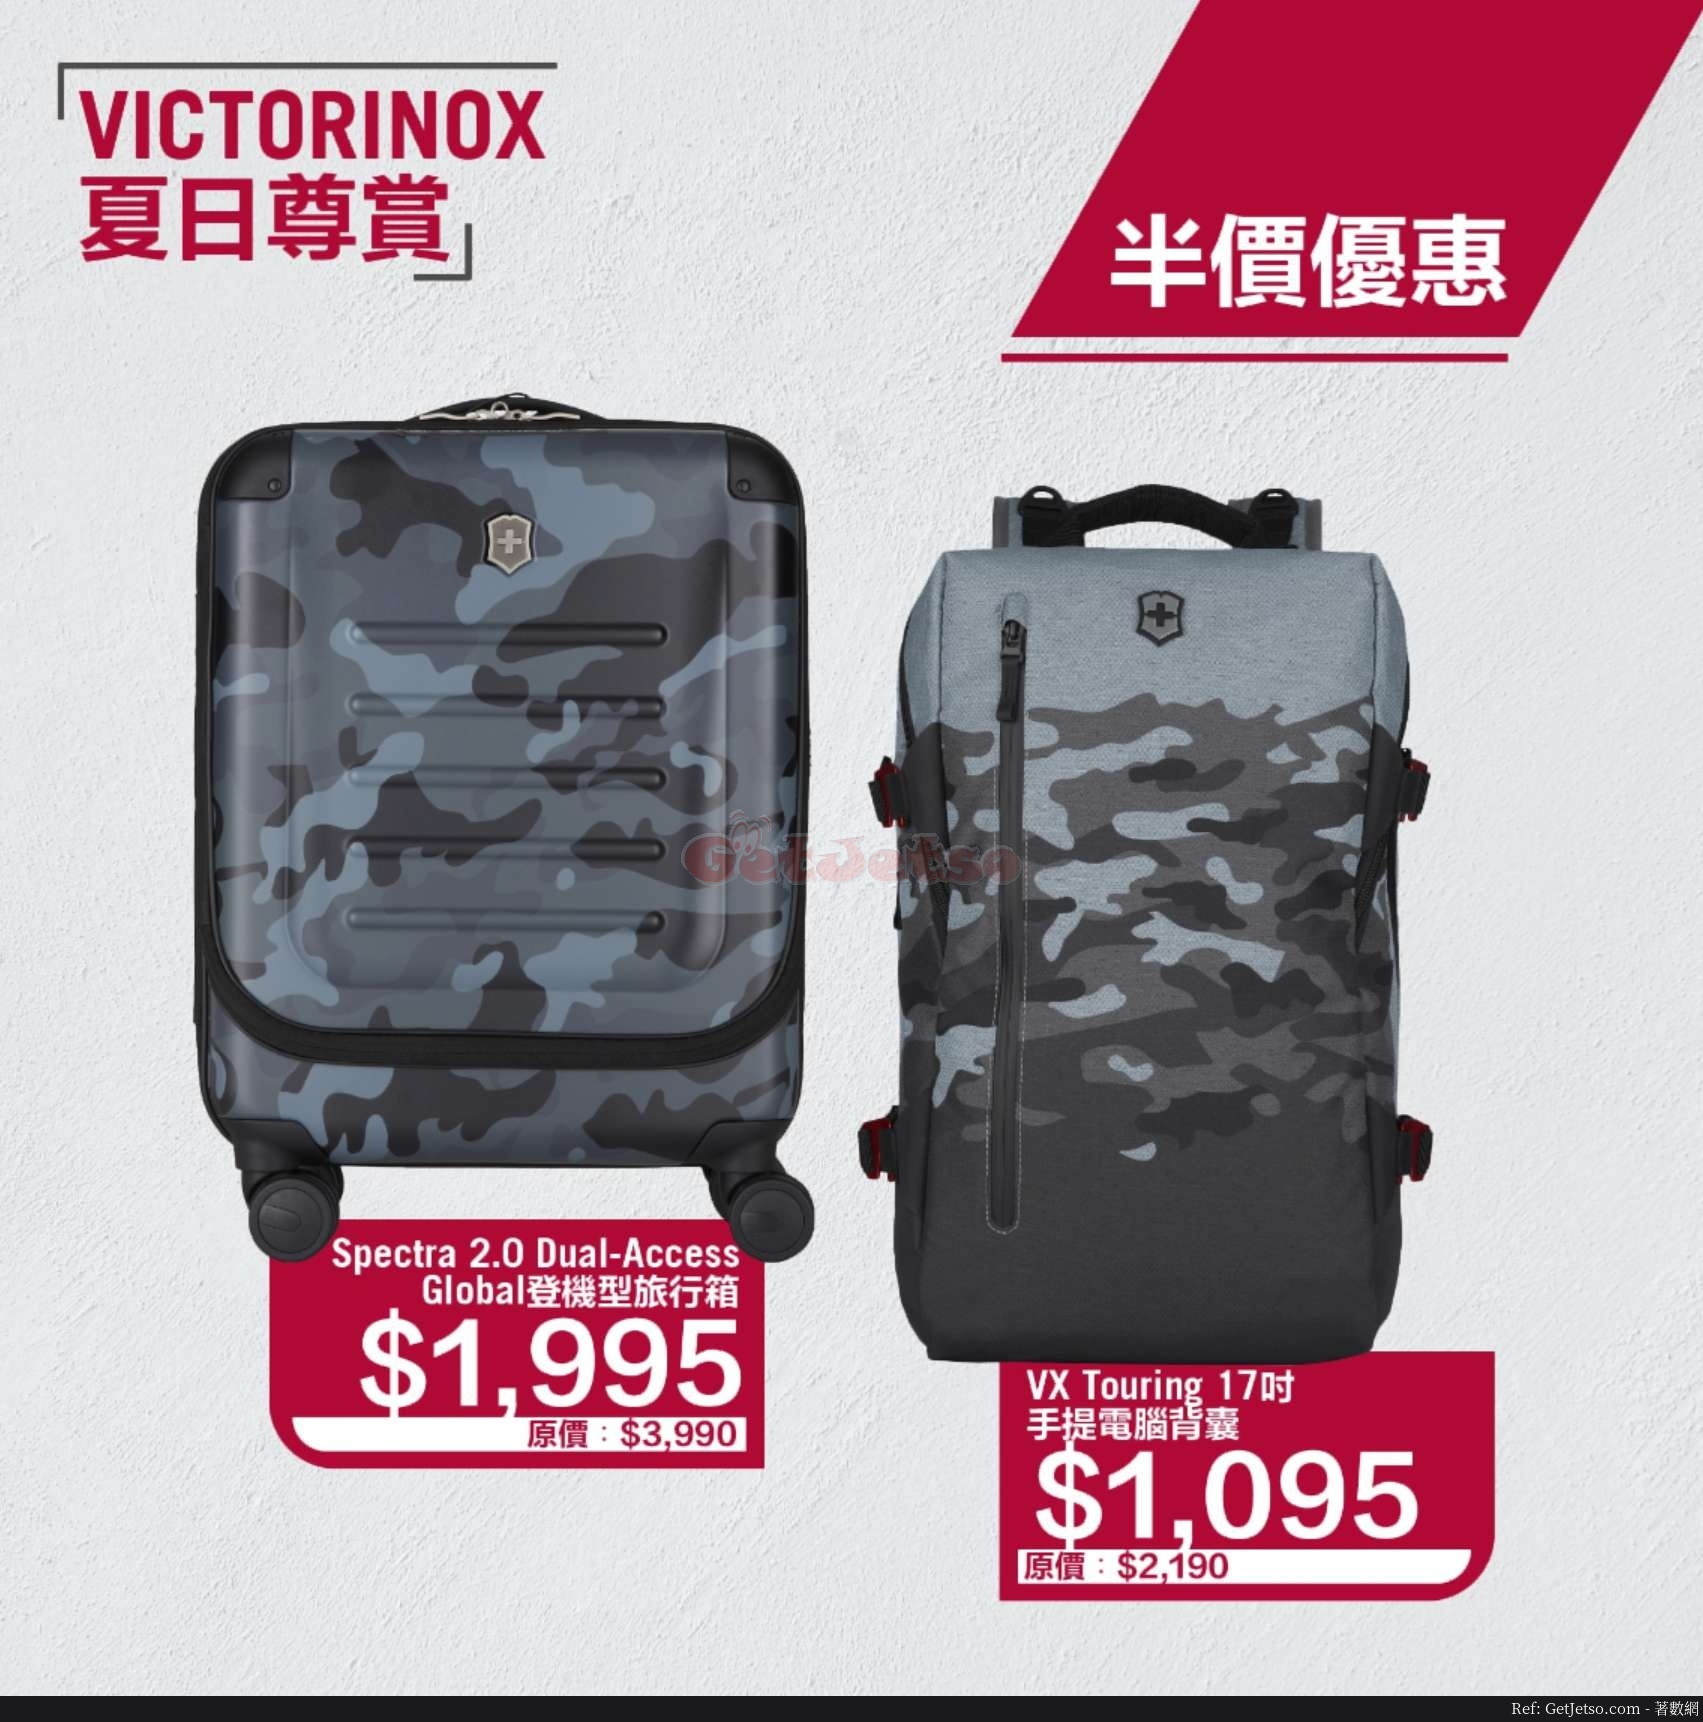 VICTORINOX低至5折減價優惠(20年6月10日起)圖片2